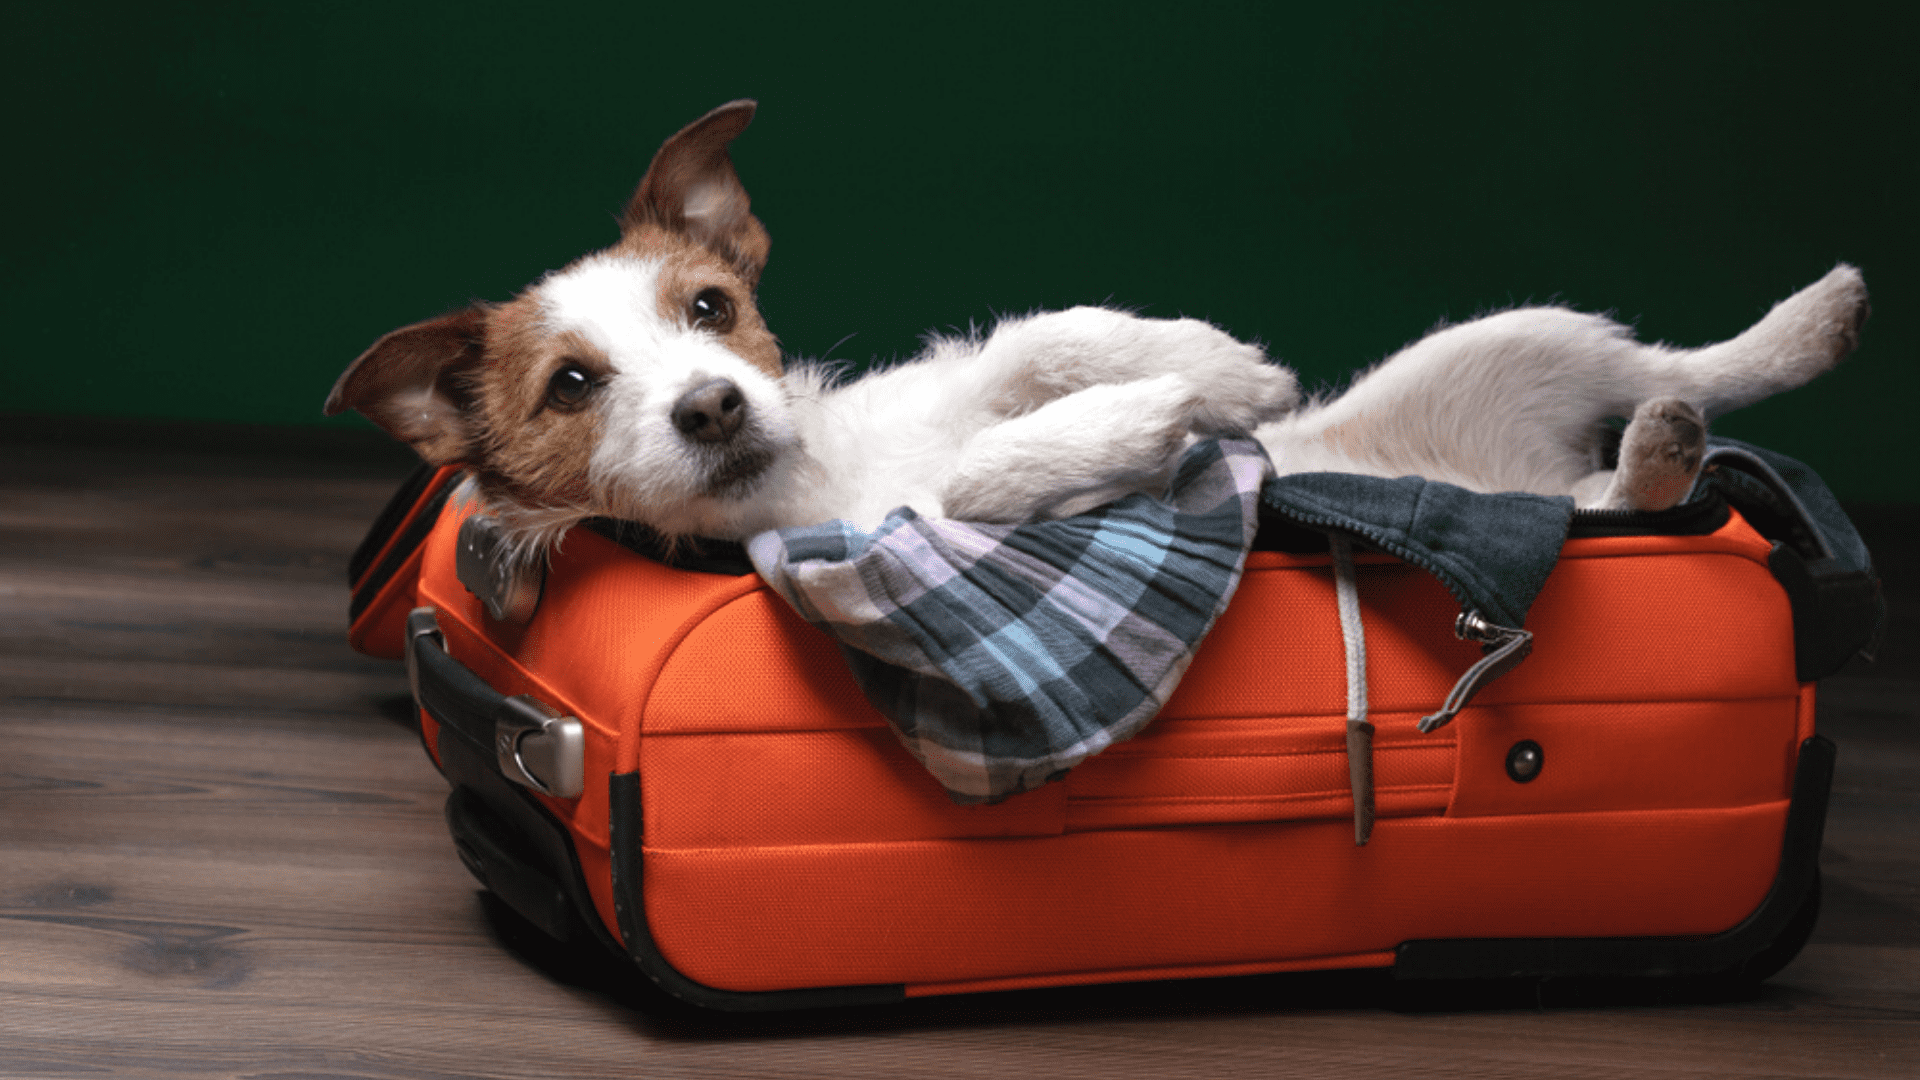 Viagens com pets: dicas essenciais para uma jornada tranquila com seu melhor amigo